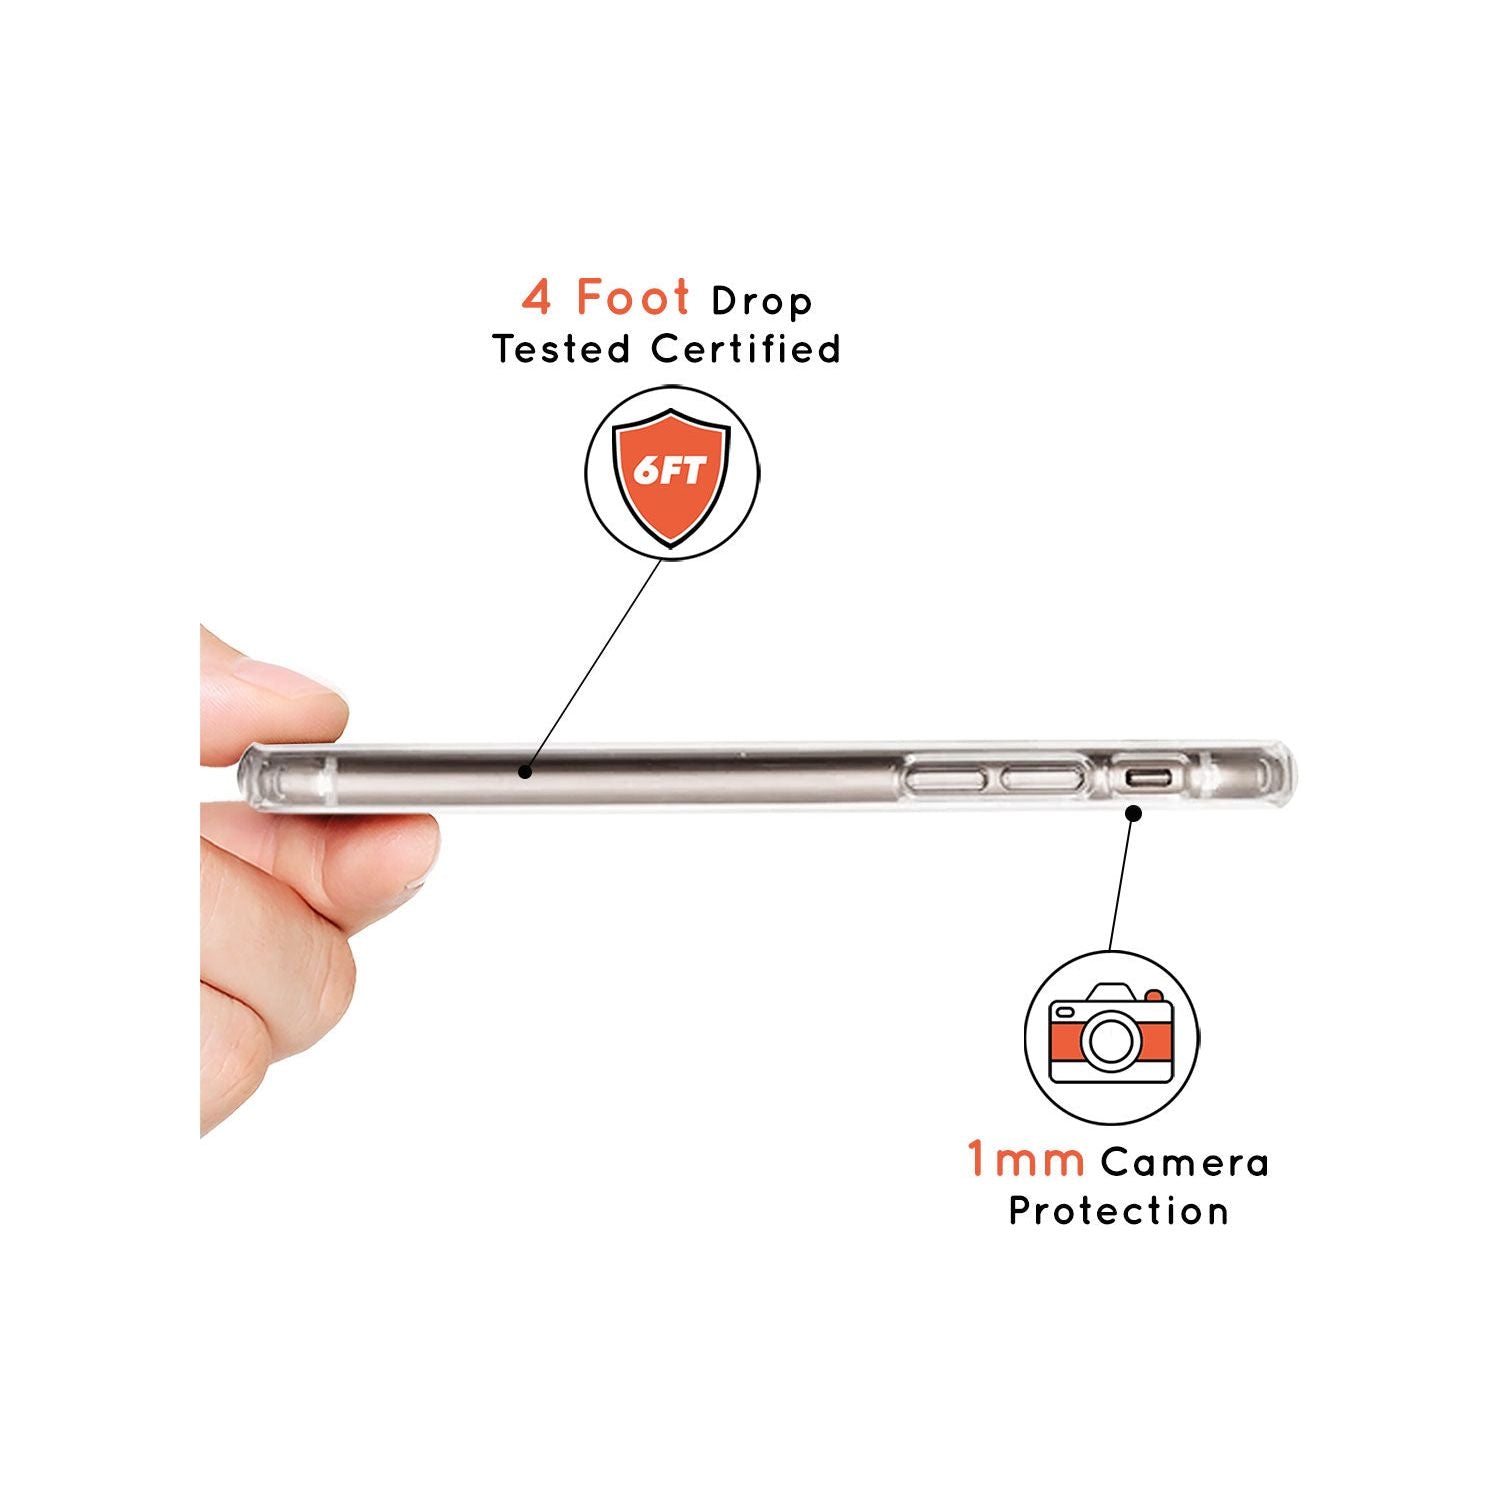 Virgo Emblem - Transparent Design Slim TPU Phone Case for iPhone 11 Pro Max